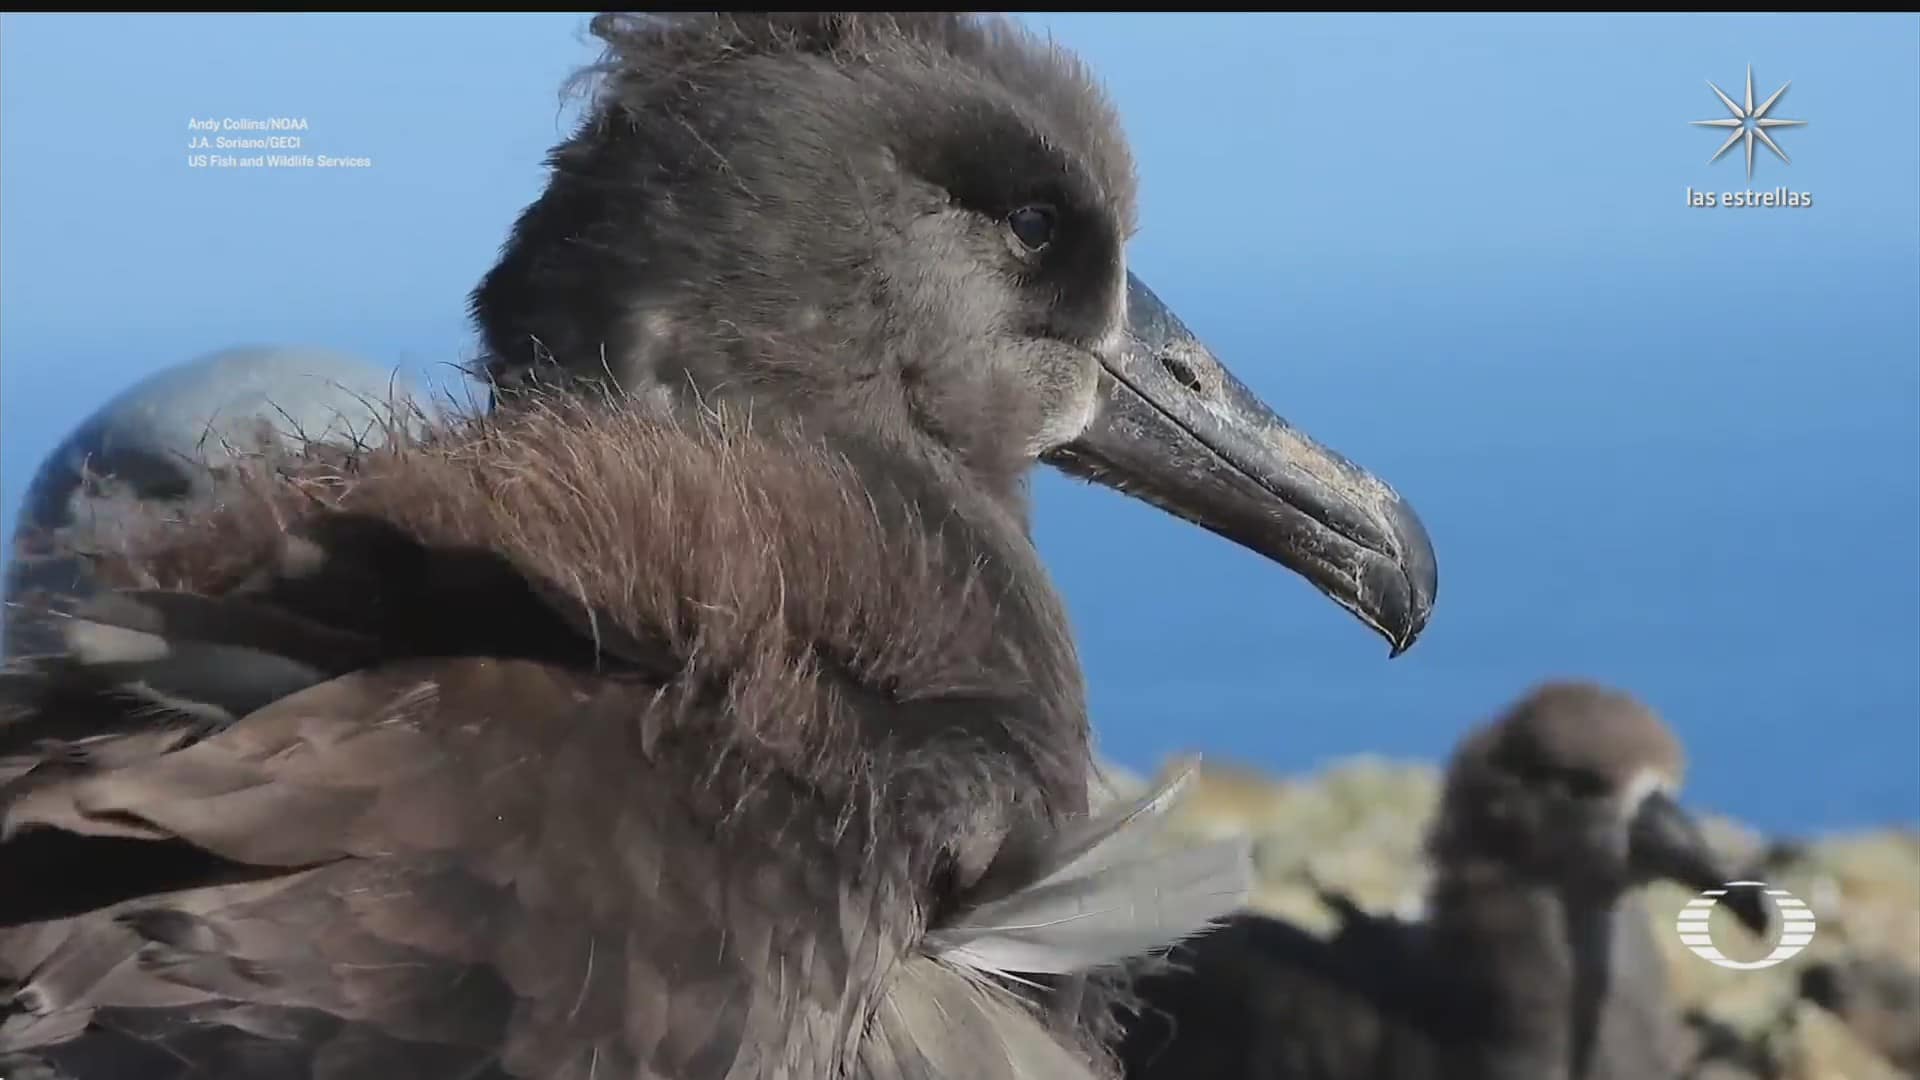 isla de guadalupe nuevo hogar de albatros